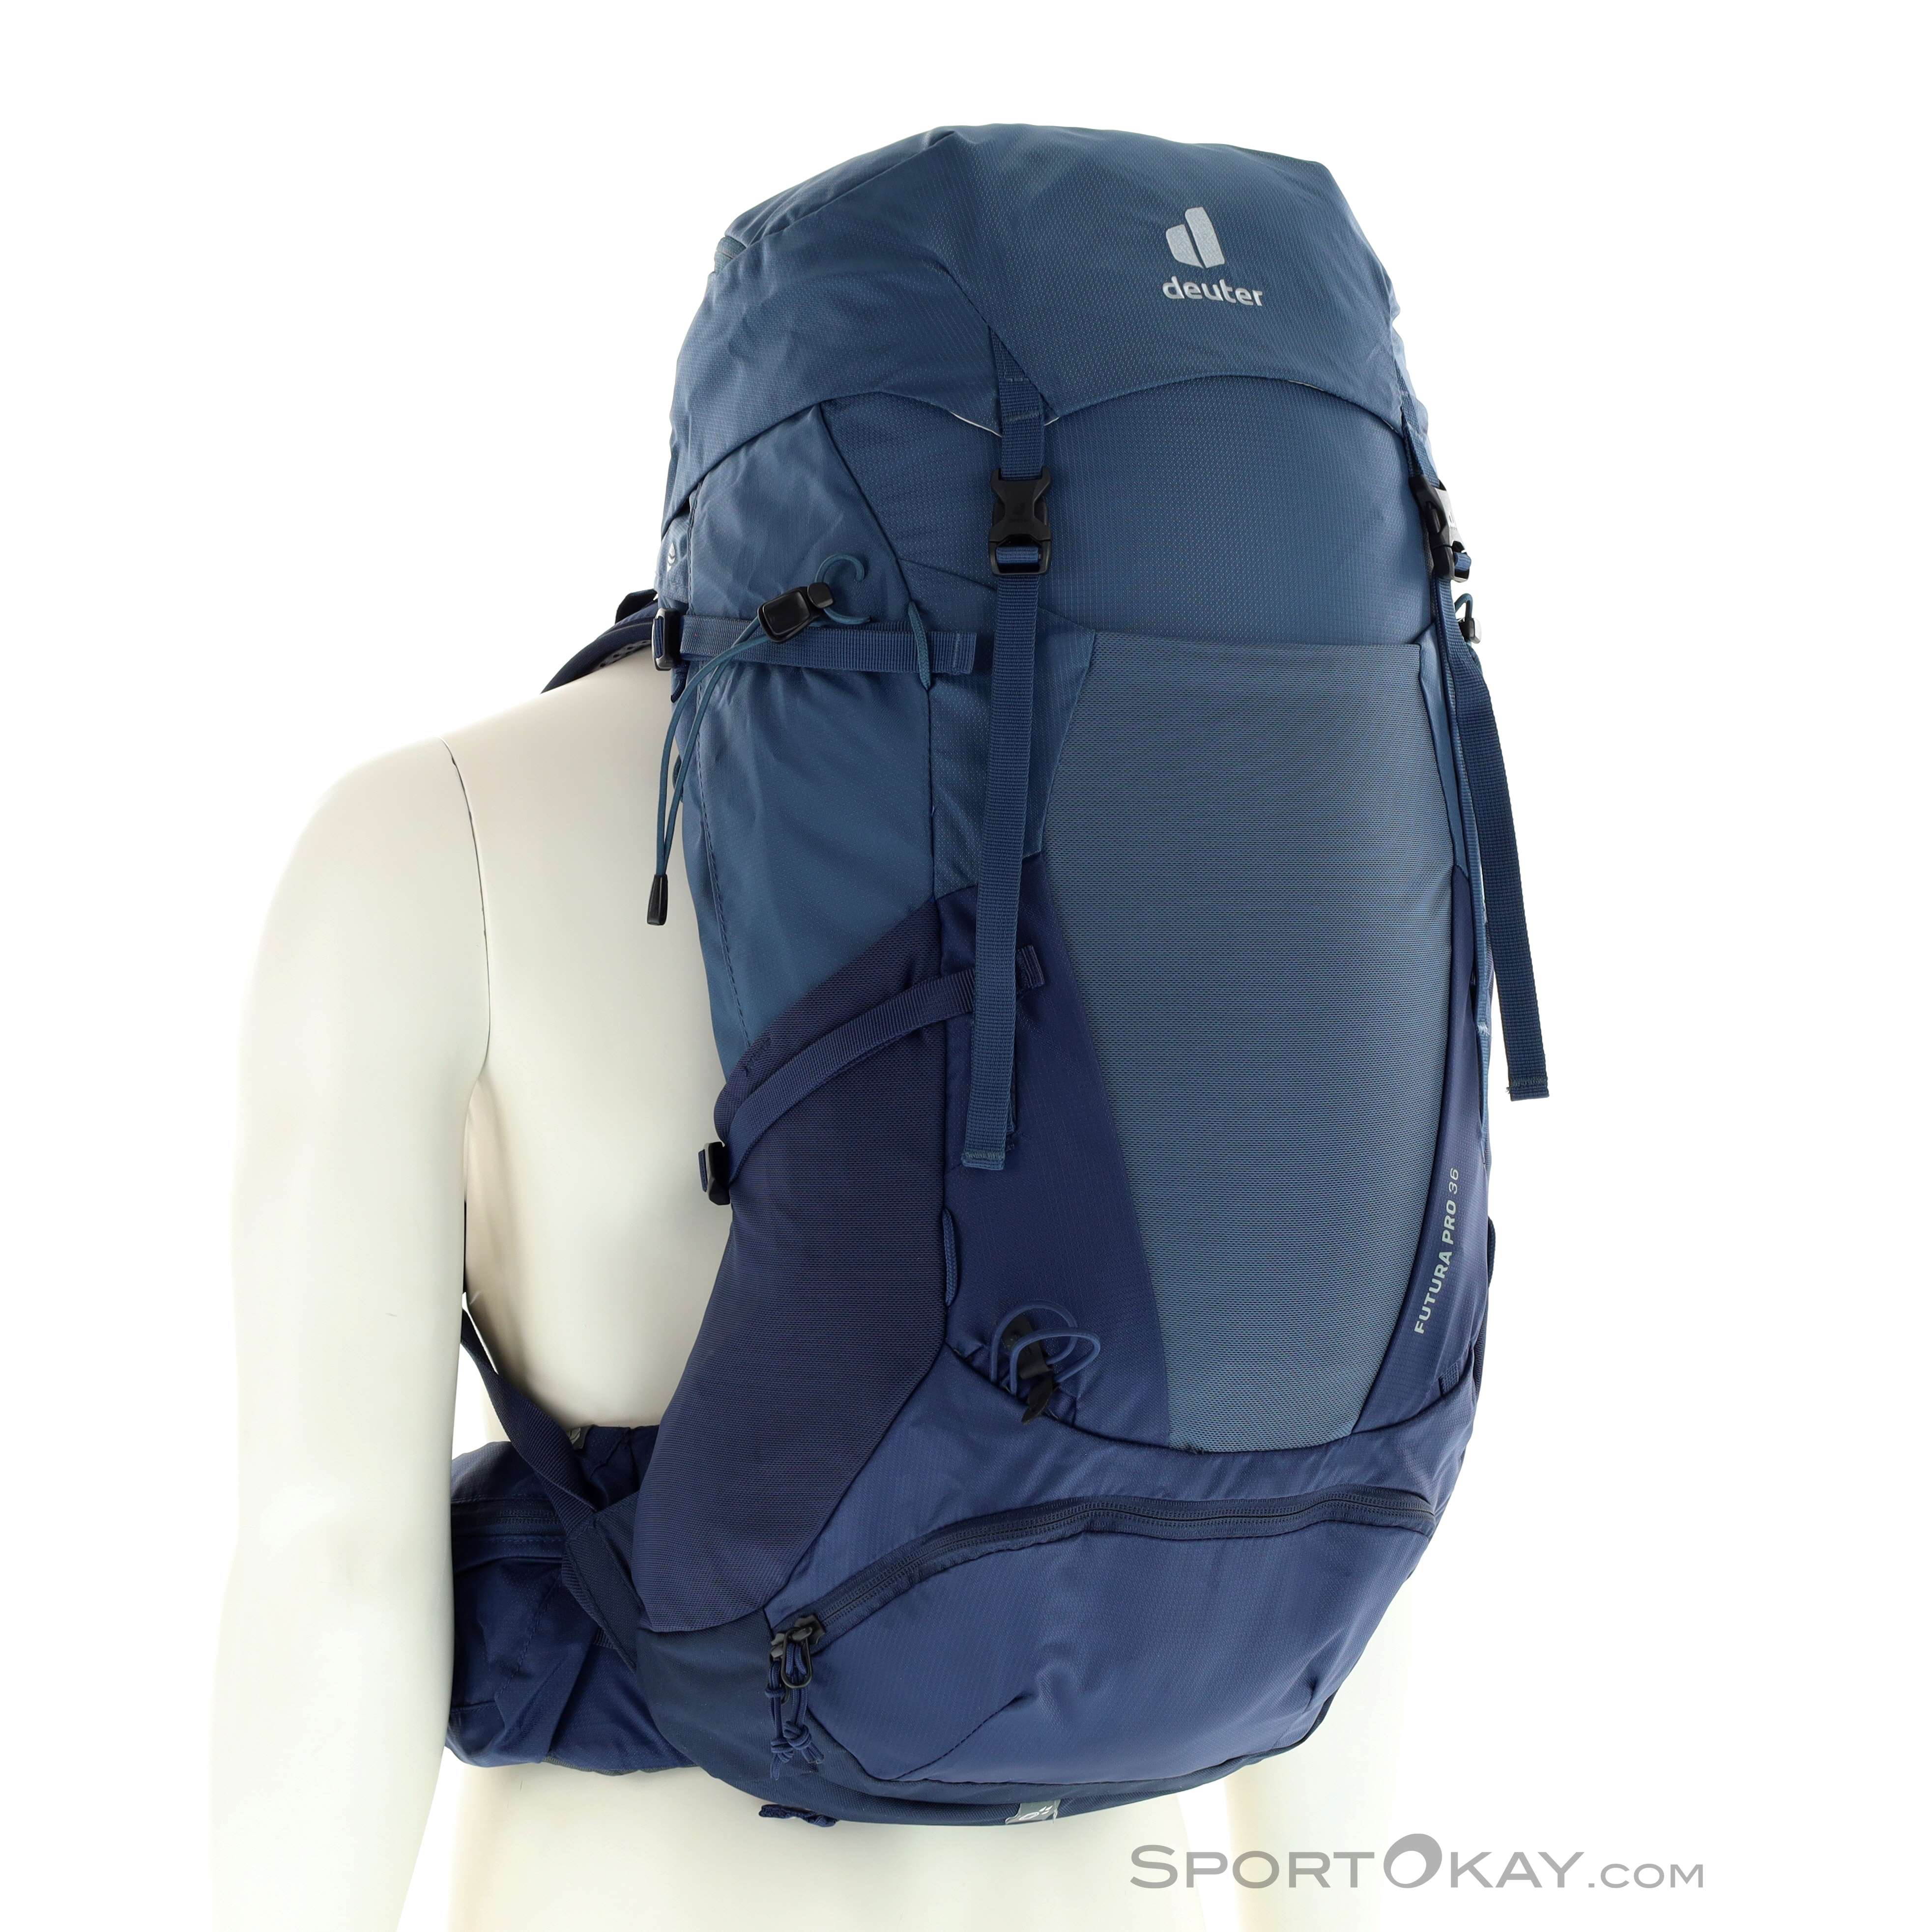 Bijbel Ongehoorzaamheid volwassene Deuter Futura Pro 36l Backpack - Backpacks - Backpacks & Headlamps -  Outdoor - All